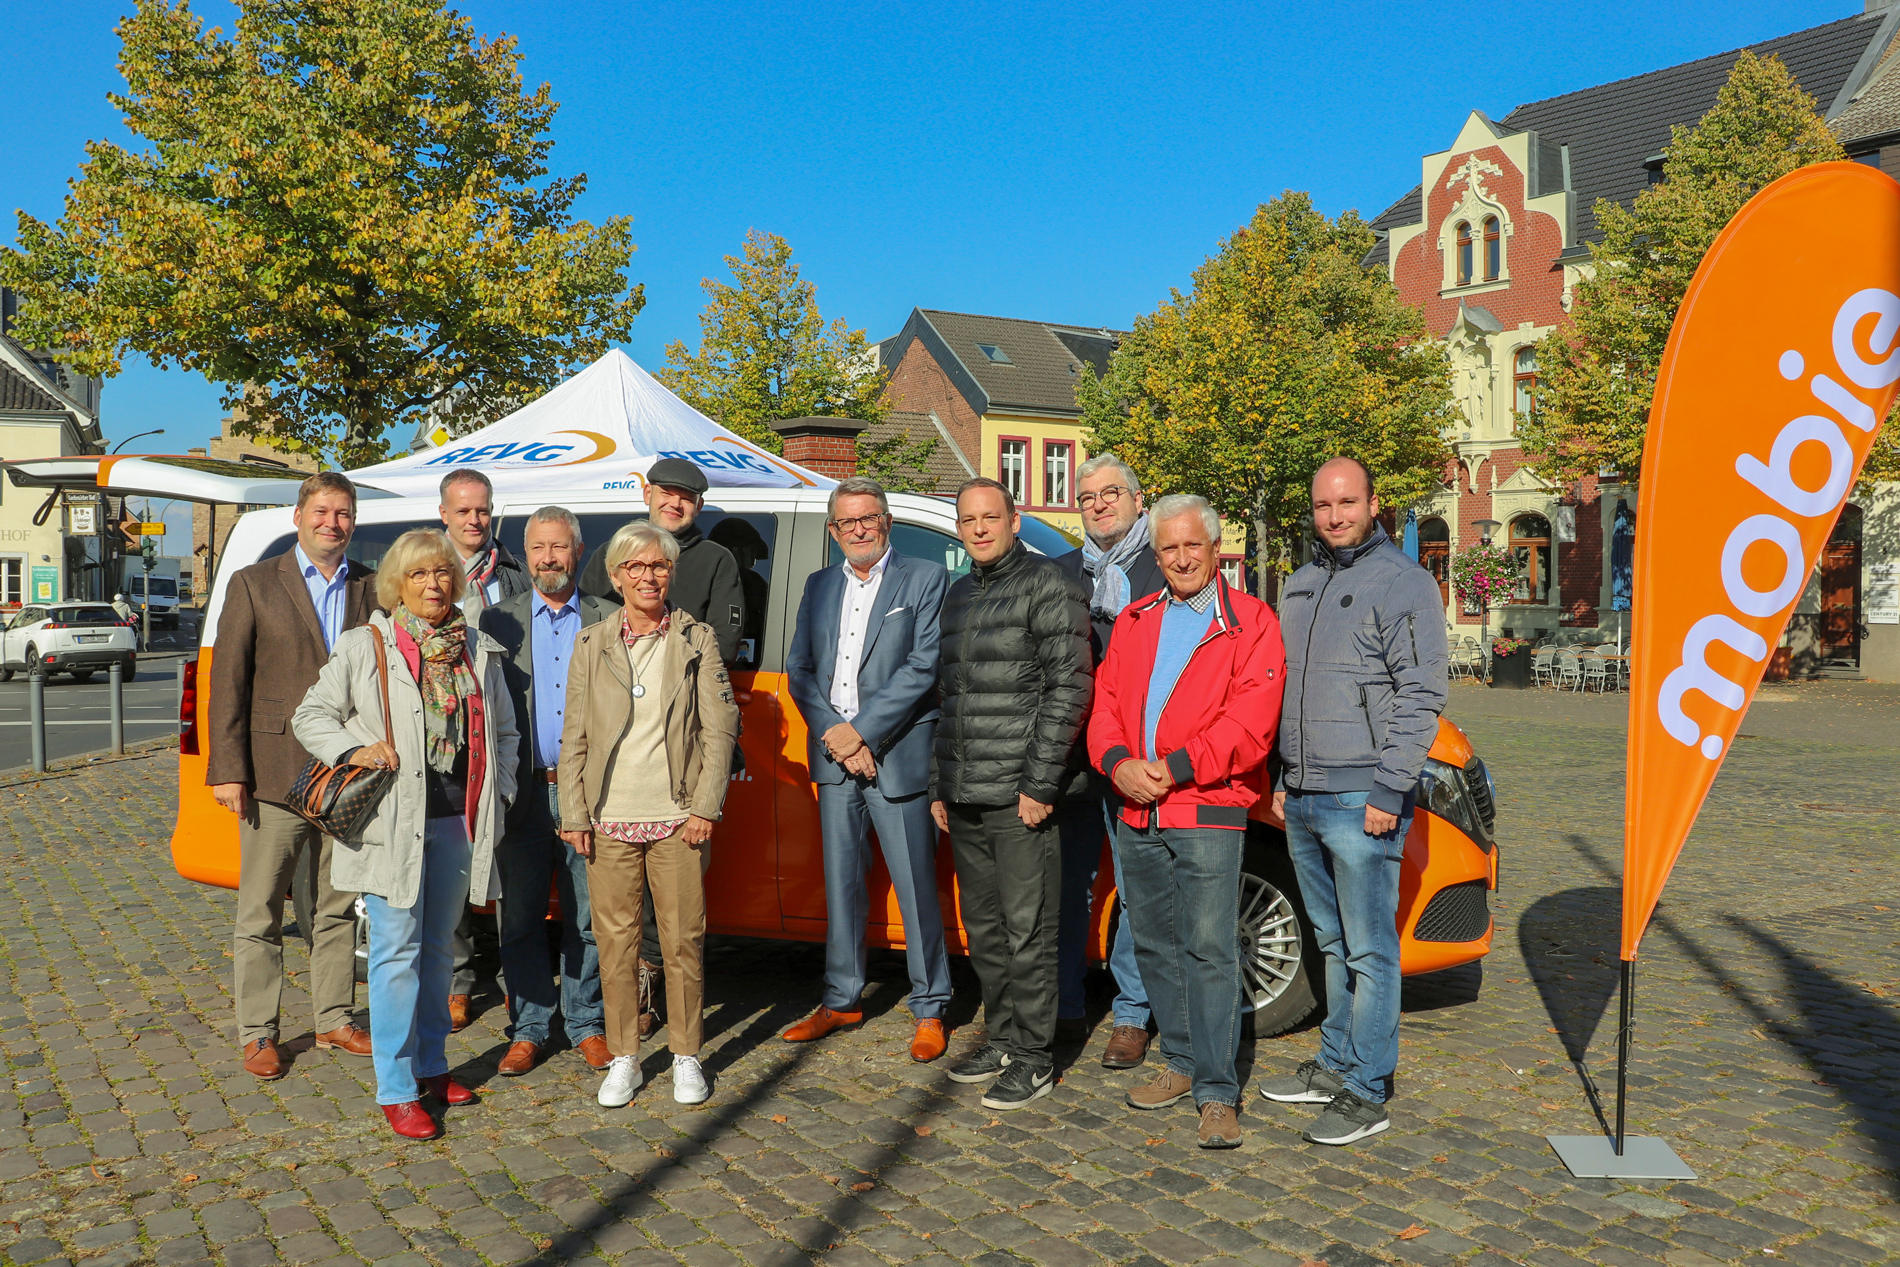 Marktplatz in Erftstadt Lechenich. Vor dem mobie Fahrzeug stehen Vertreter der REVG (Martin Gawrisch und Walter Reinarz) und der Stadt Erftstadt.